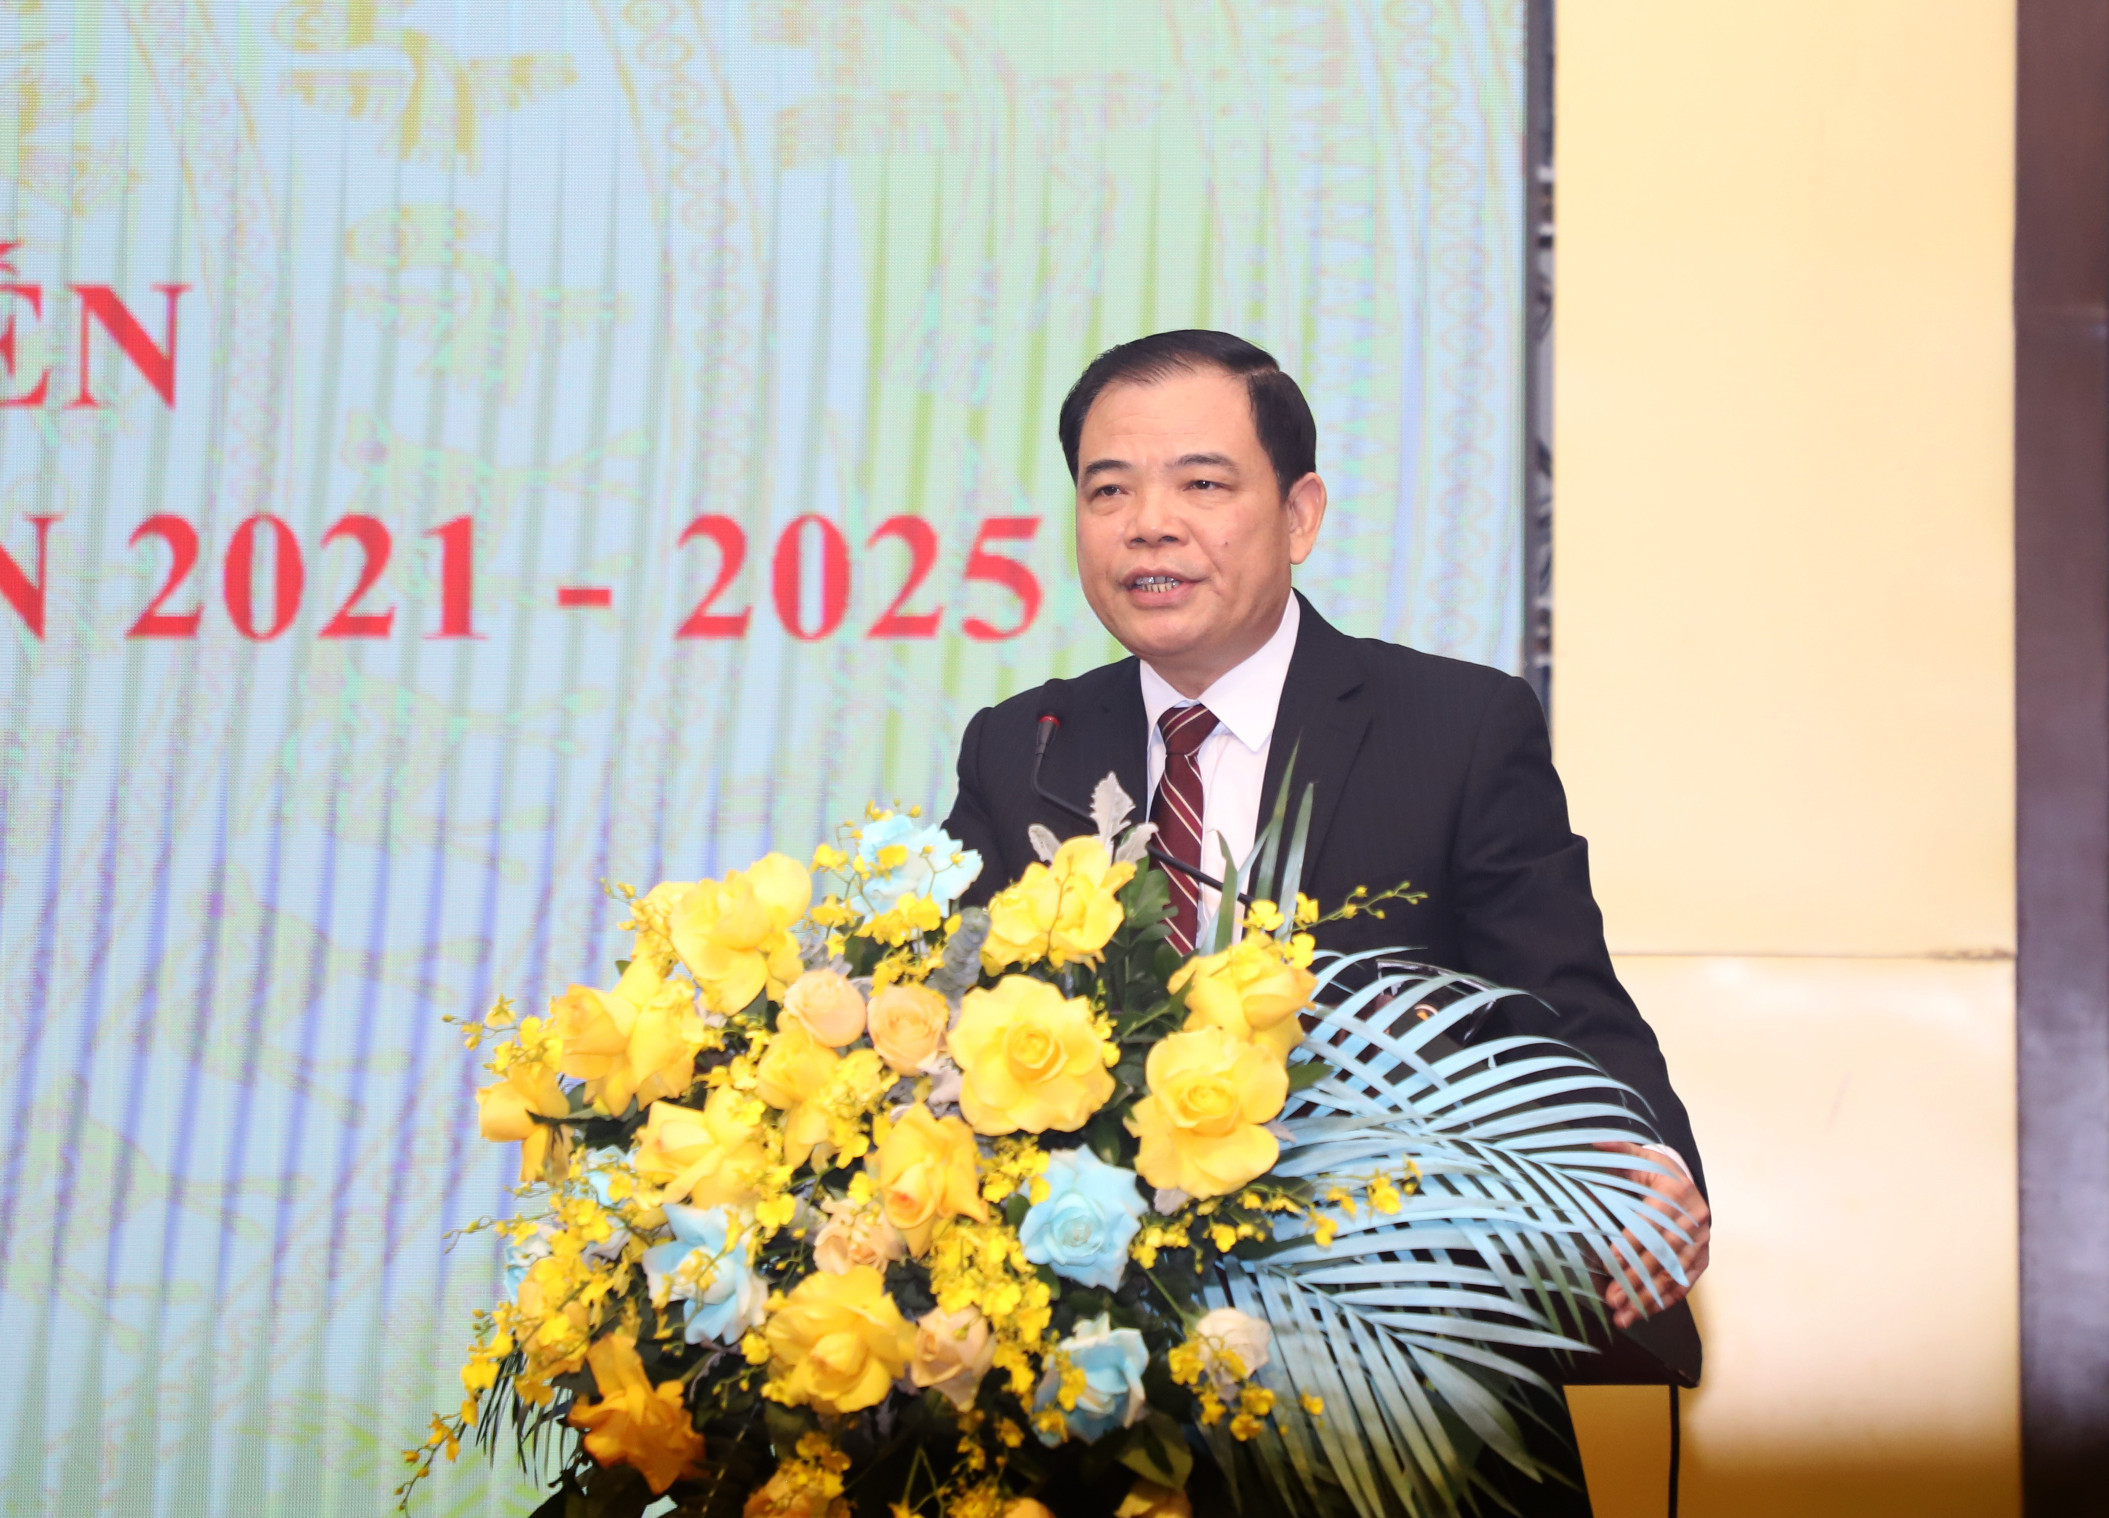 Bộ trưởng Bộ NN&PTNT Nguyễn Xuân Cường phát biểu khai mạc Hội nghị. Ảnh: Phạm Bằng